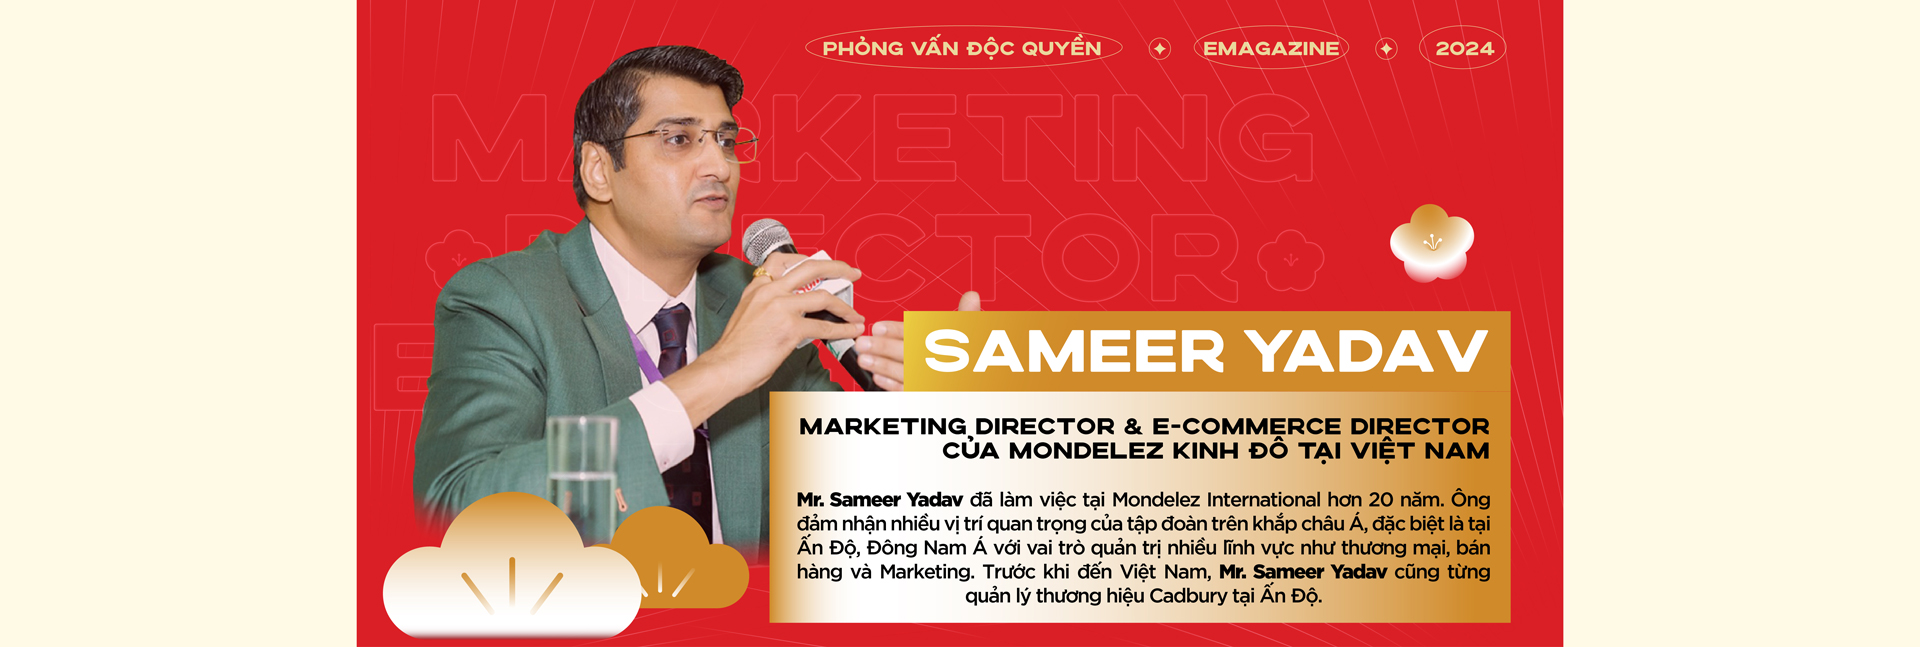 [Phỏng vấn độc quyền] Marketing Director của Mondelez Kinh Đô Yadav Sameer - Nhất quán trong thông điệp, mới mẻ trong câu chuyện - Bí quyết đằng sau thành công của chiến dịch “Thấy Kinh đô là thấy Tết”- Ảnh 1.